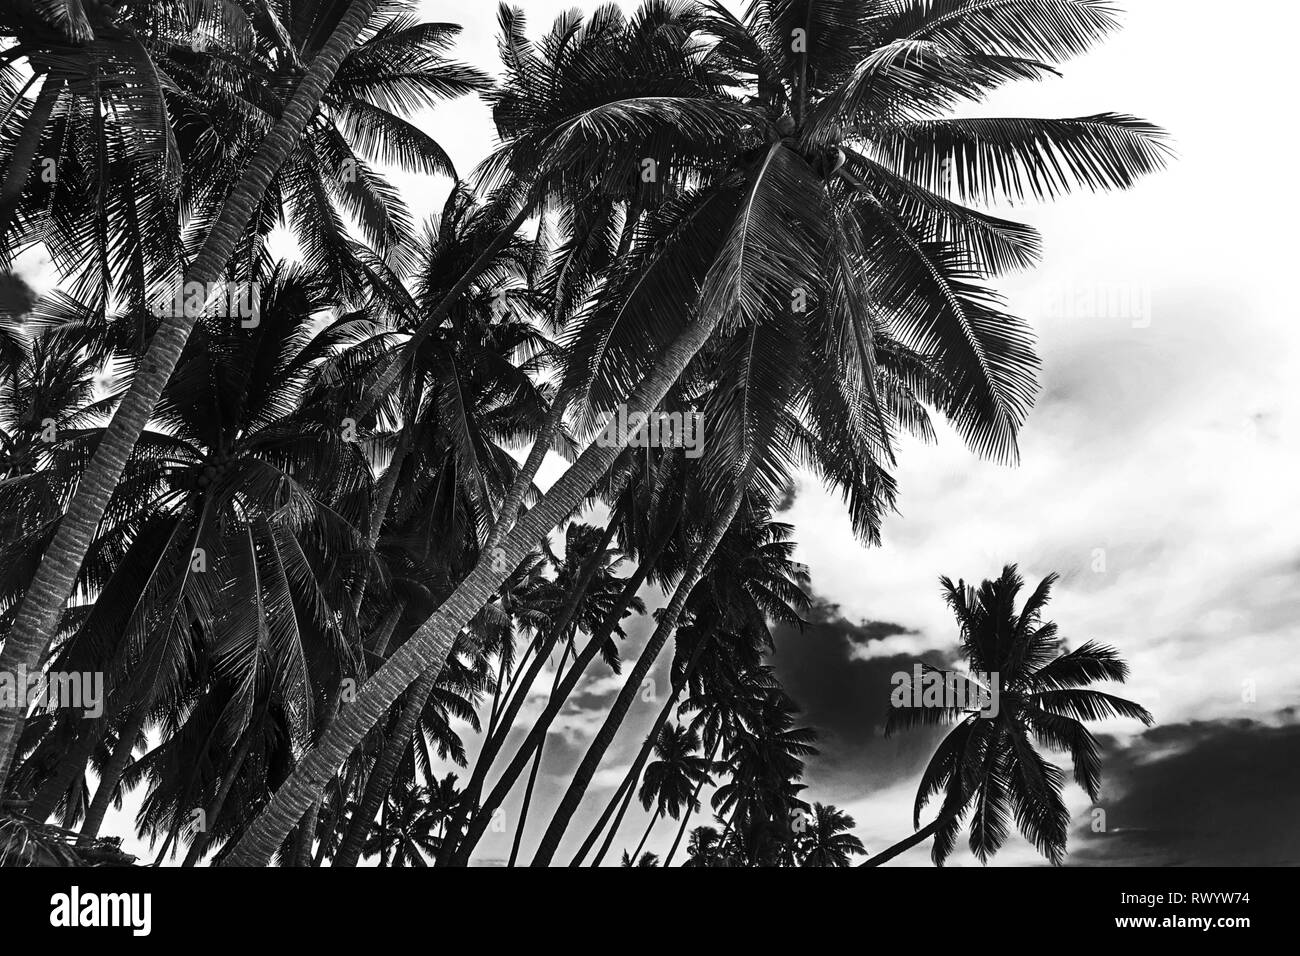 Les cocotiers tropical isolé sur fond clair. Image en noir et blanc Banque D'Images